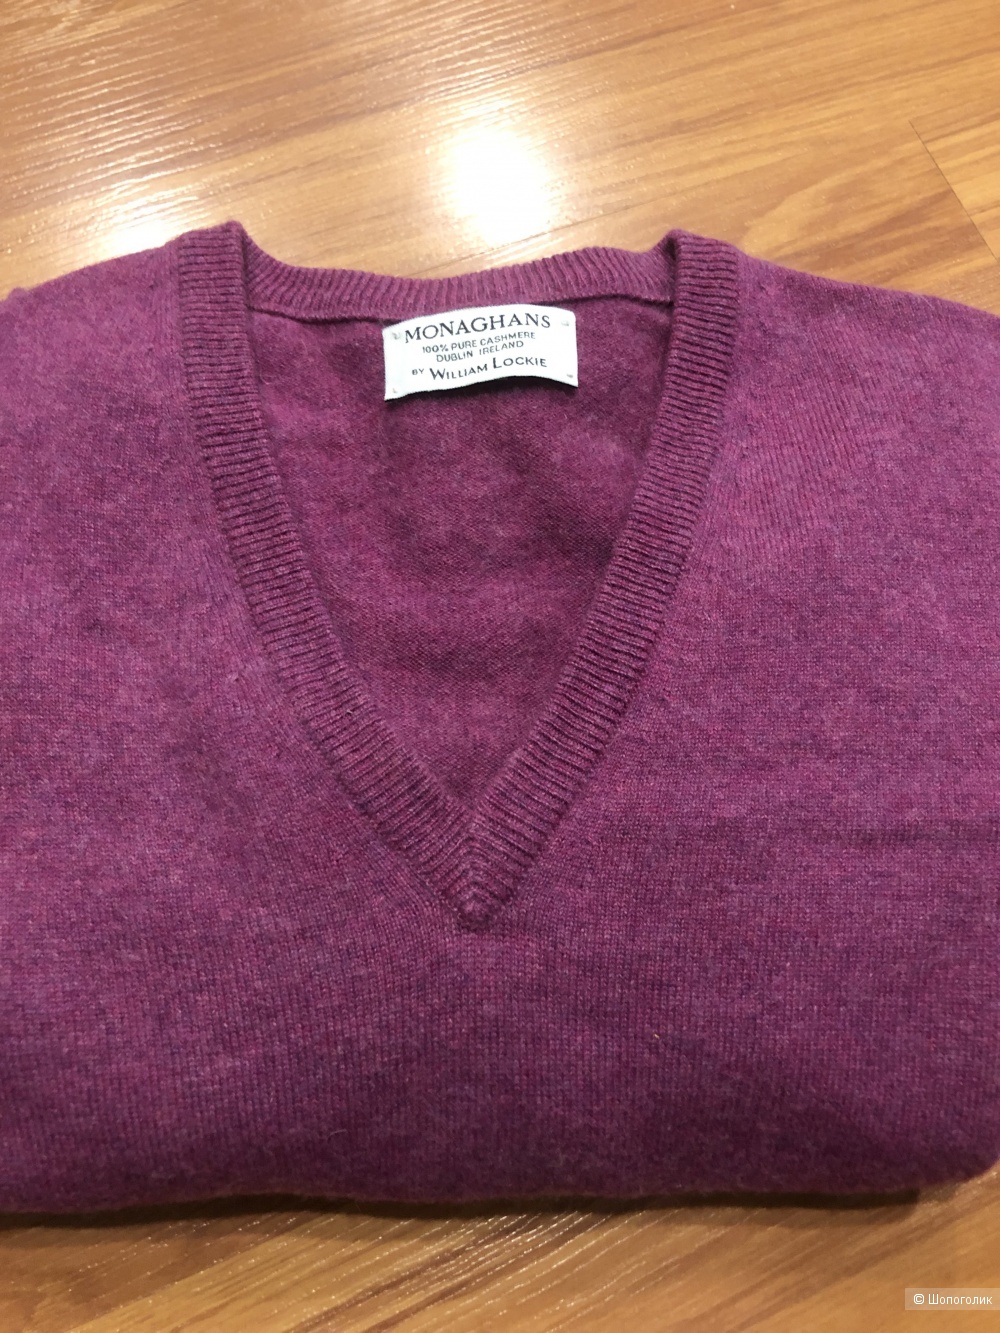 Кашемировый пуловер WILLIAM LOCKIE, размер рус 50-52